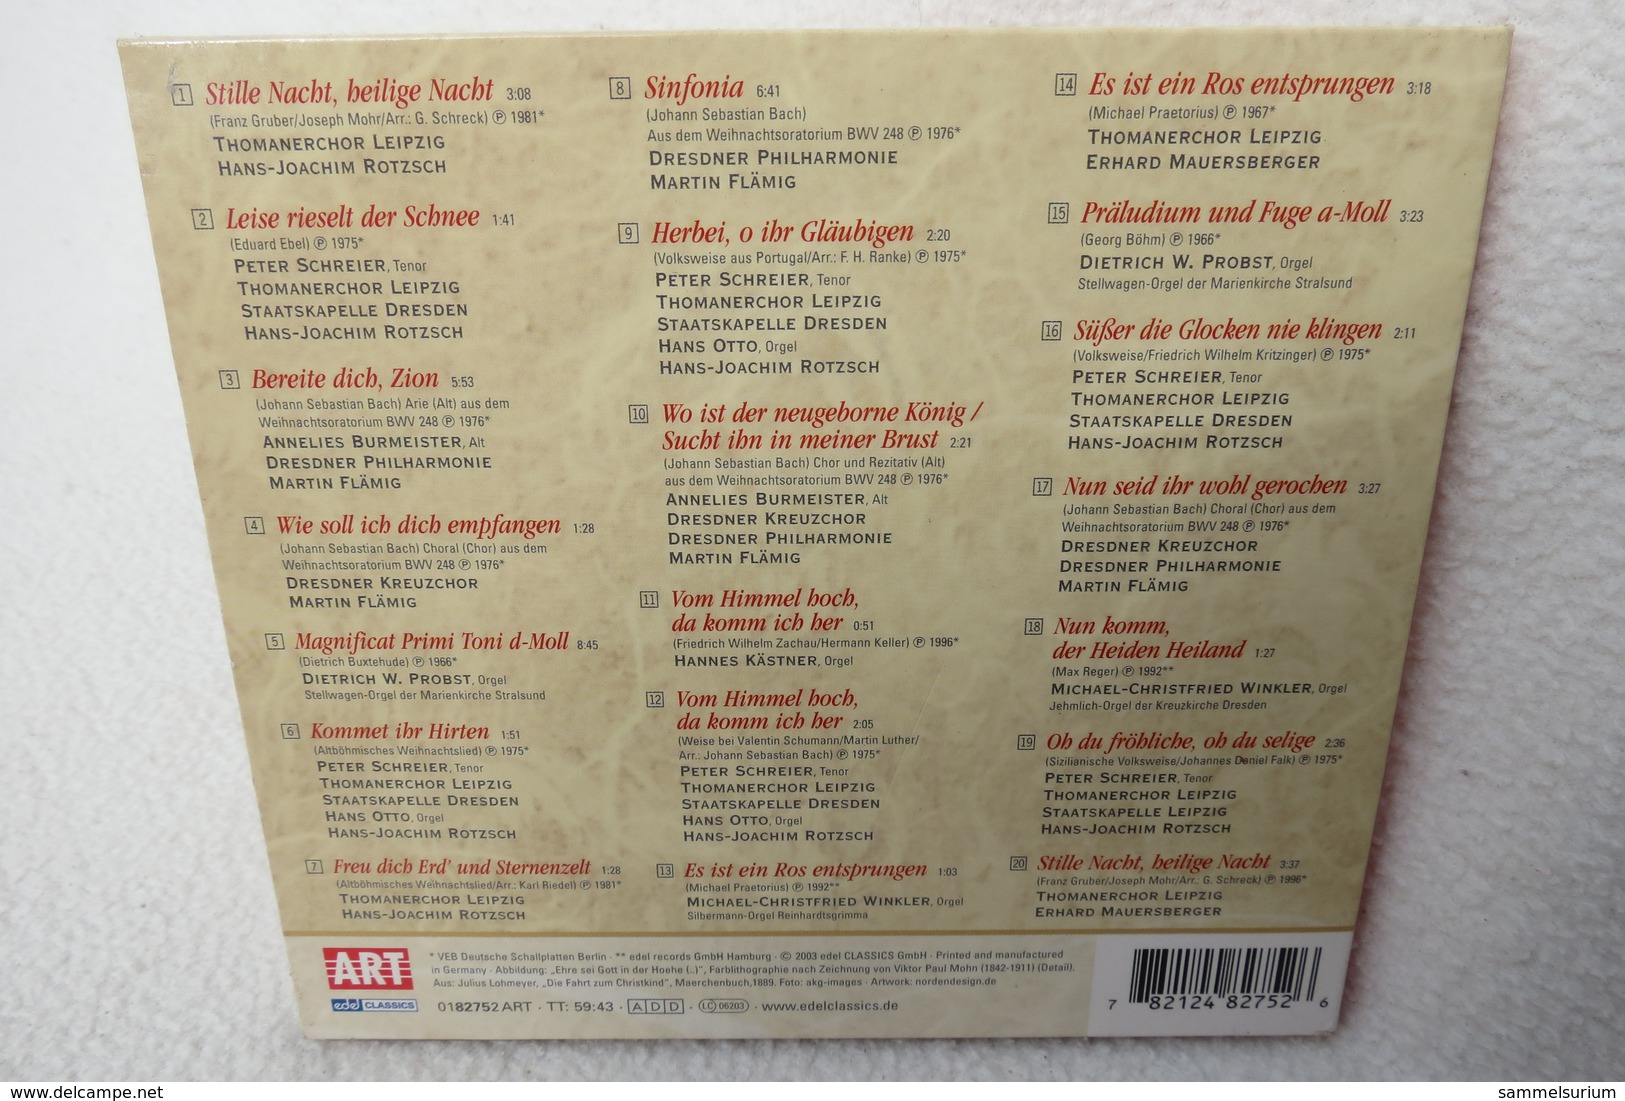 CD "Vom Himmel Hoch Da Komm Ich Her" Die Schönsten Weihnachtsmelodien - Kerstmuziek